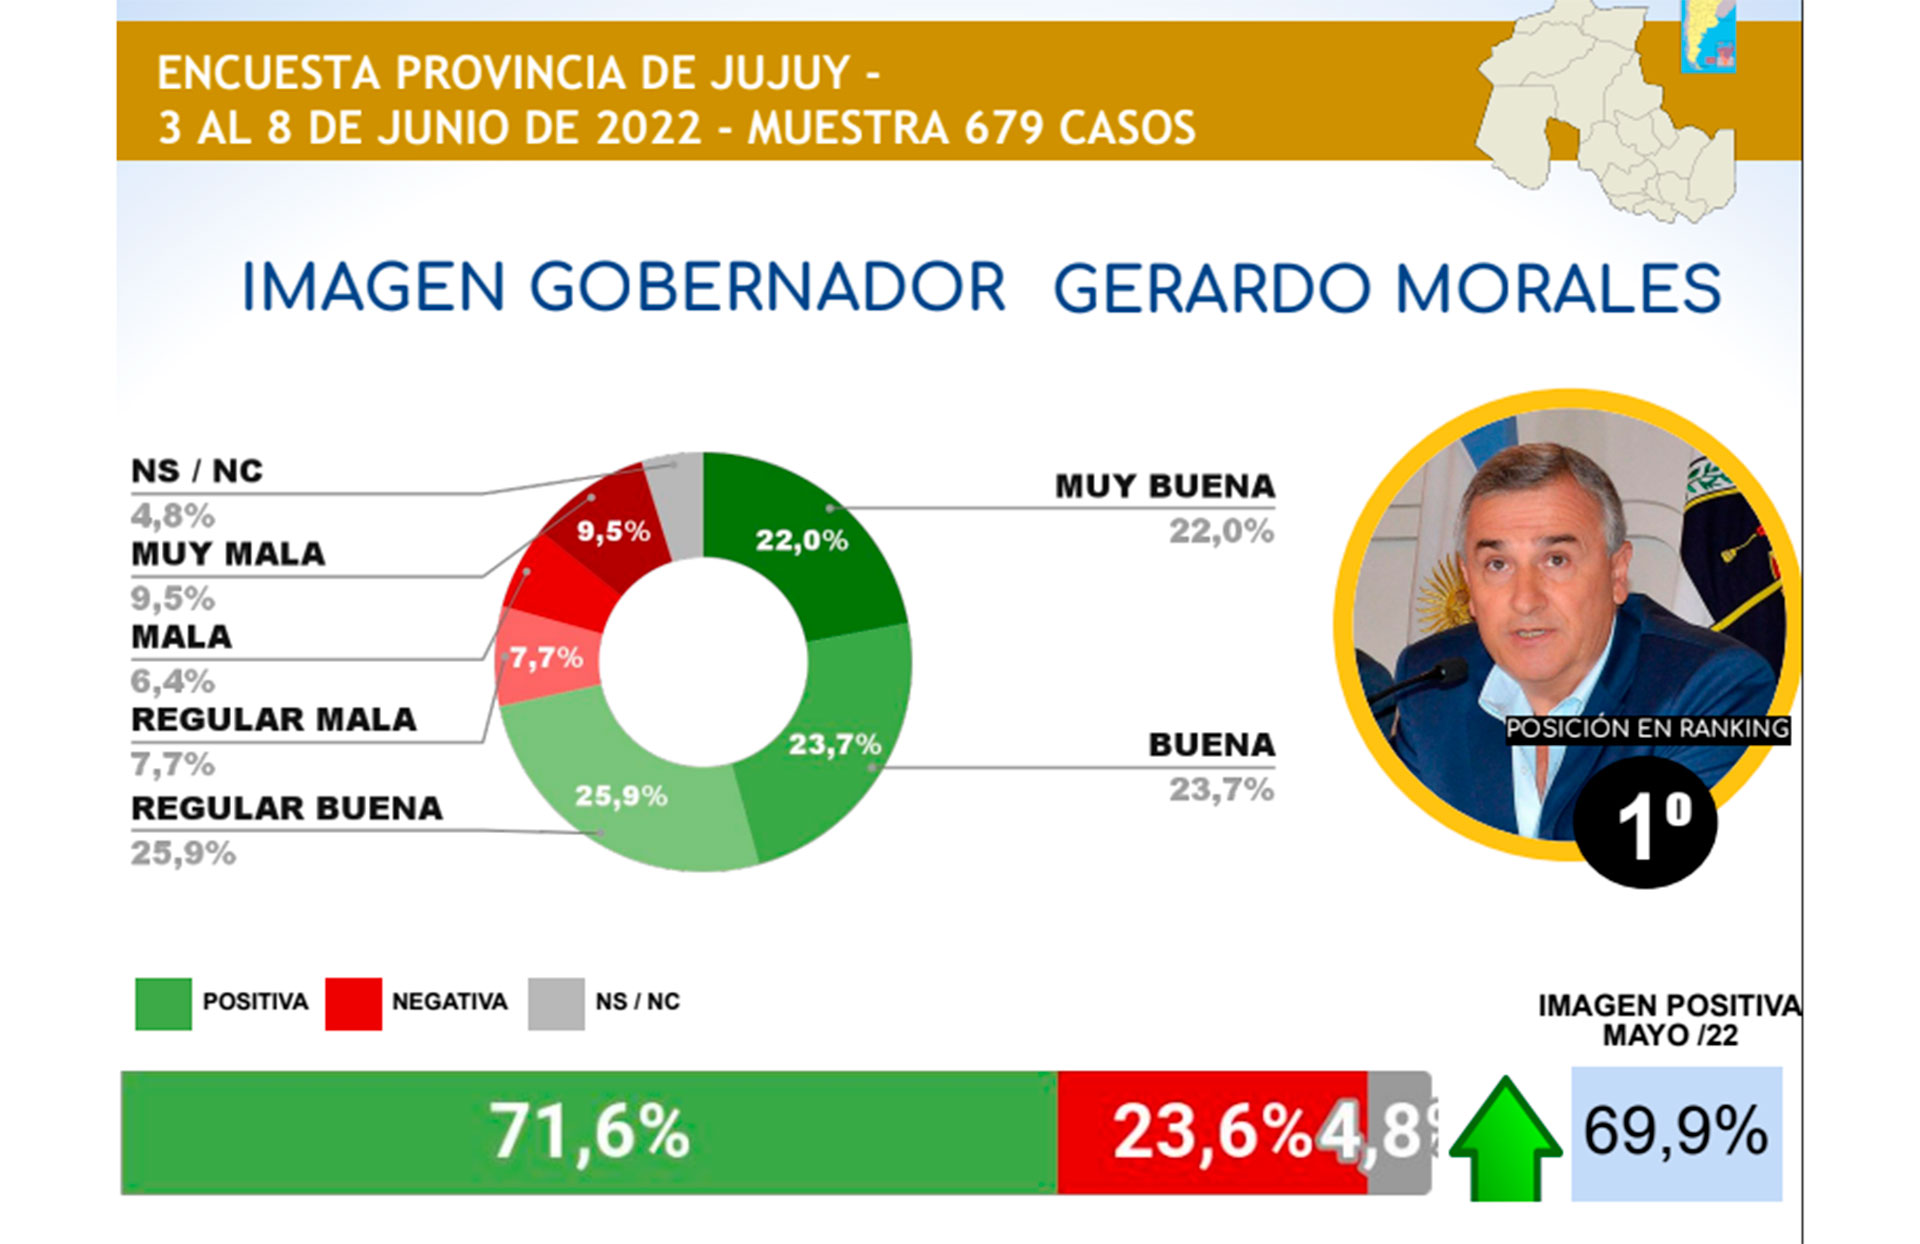 El jujeño Gerardo Morales, el gobernador más valorado, según la encuesta